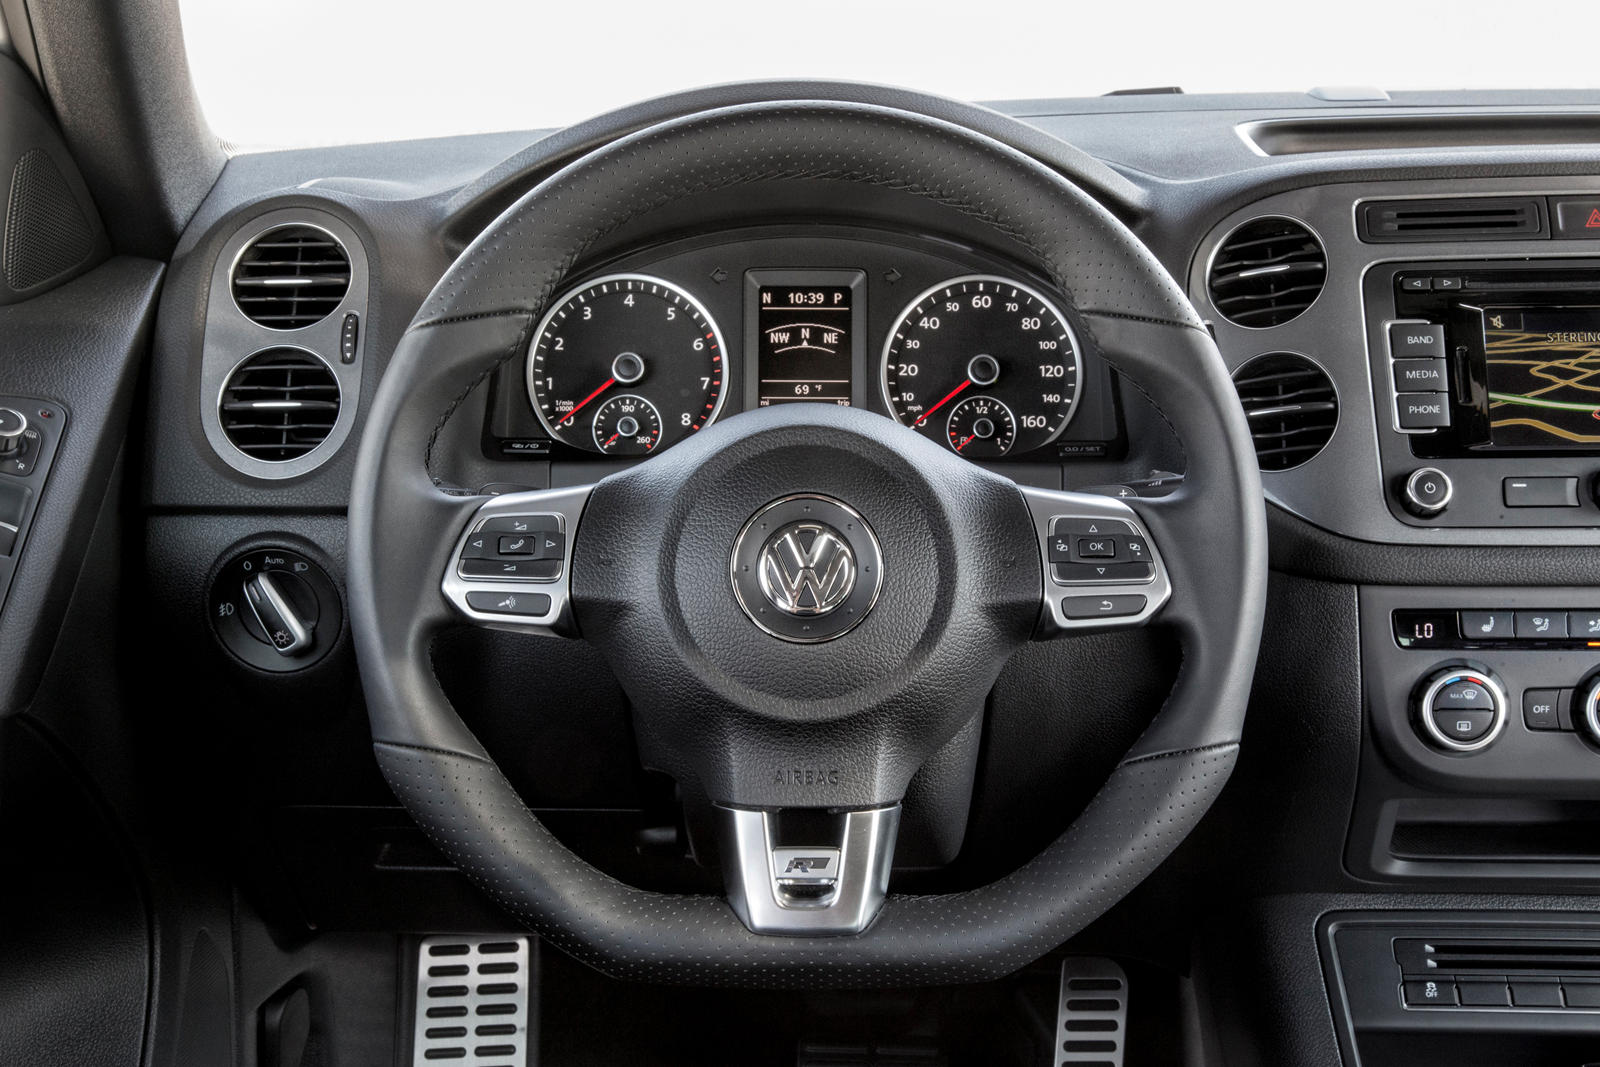 courtesy Bother lawyer 2016 Volkswagen Tiguan Interior Photos | CarBuzz